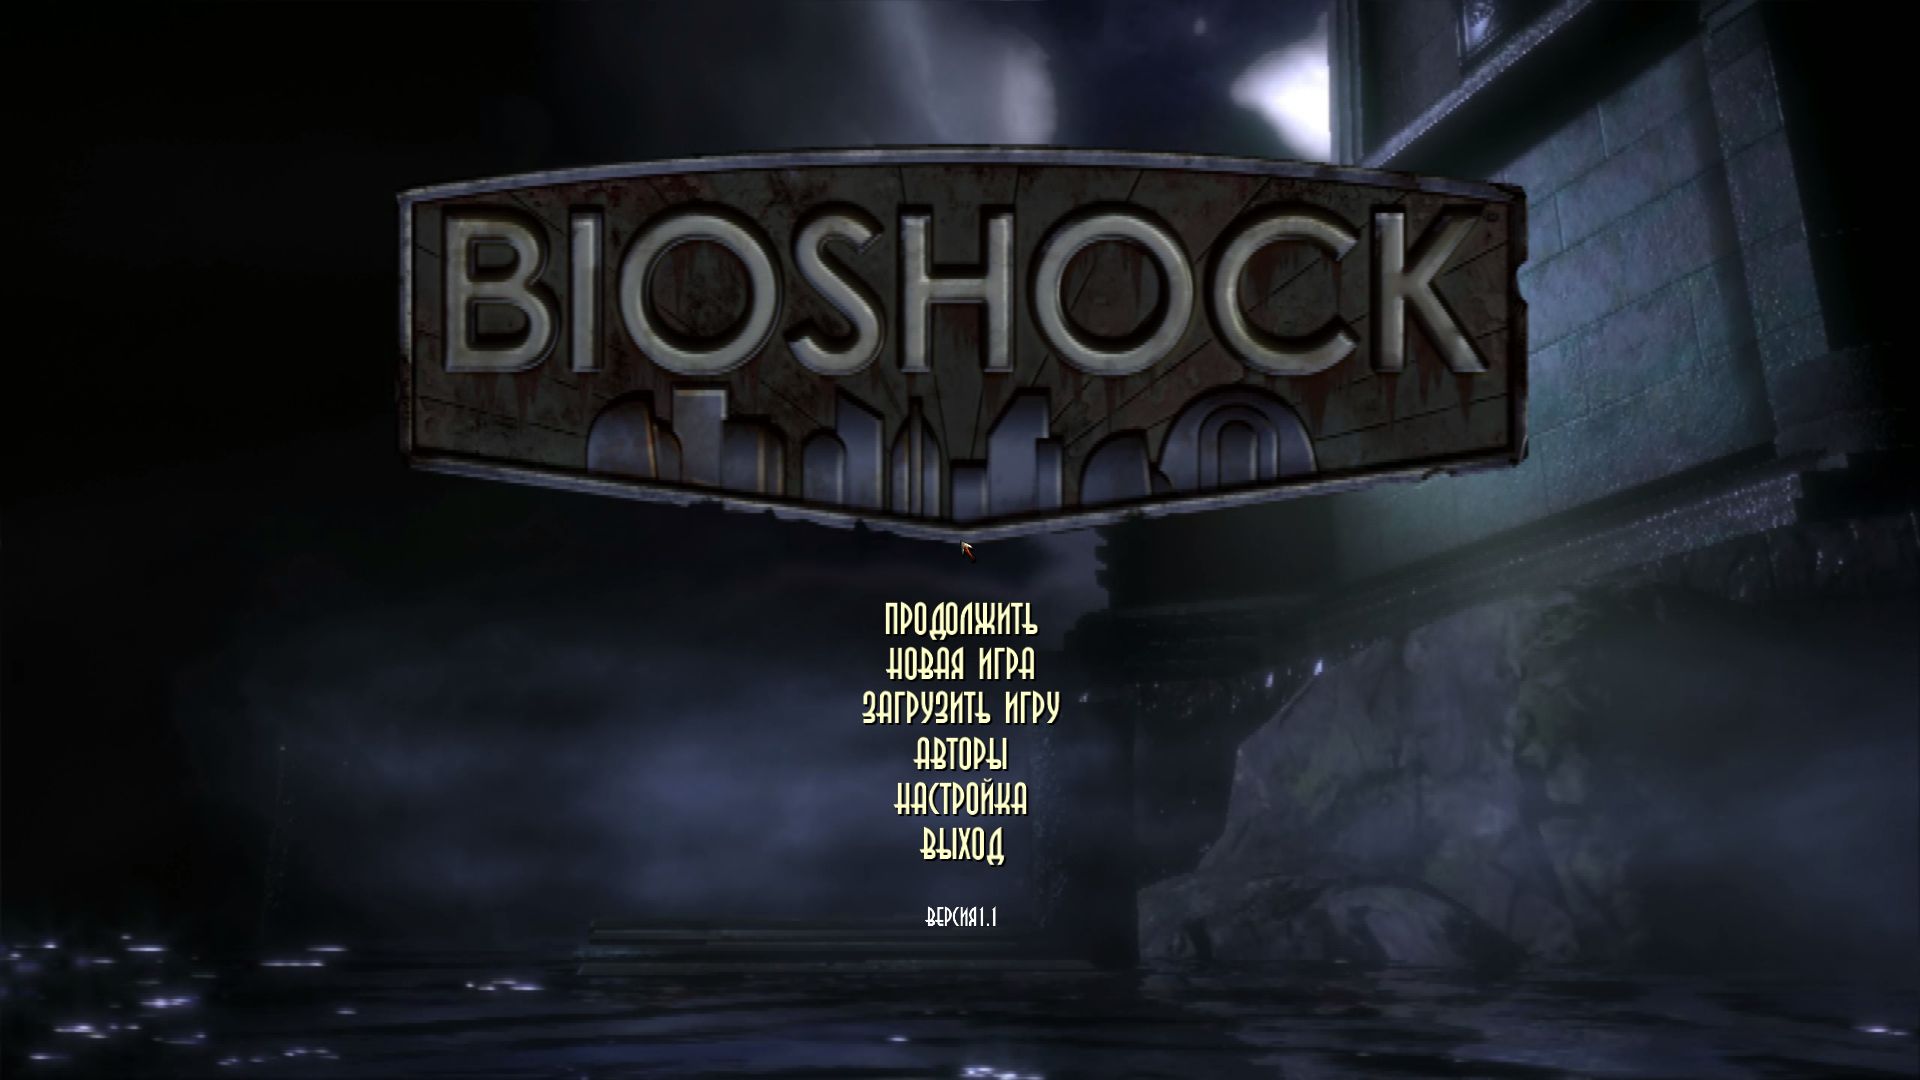 Вернуться в главное меню. Меню игры. Игровое меню. Bioshock 1. Меню разных игр.